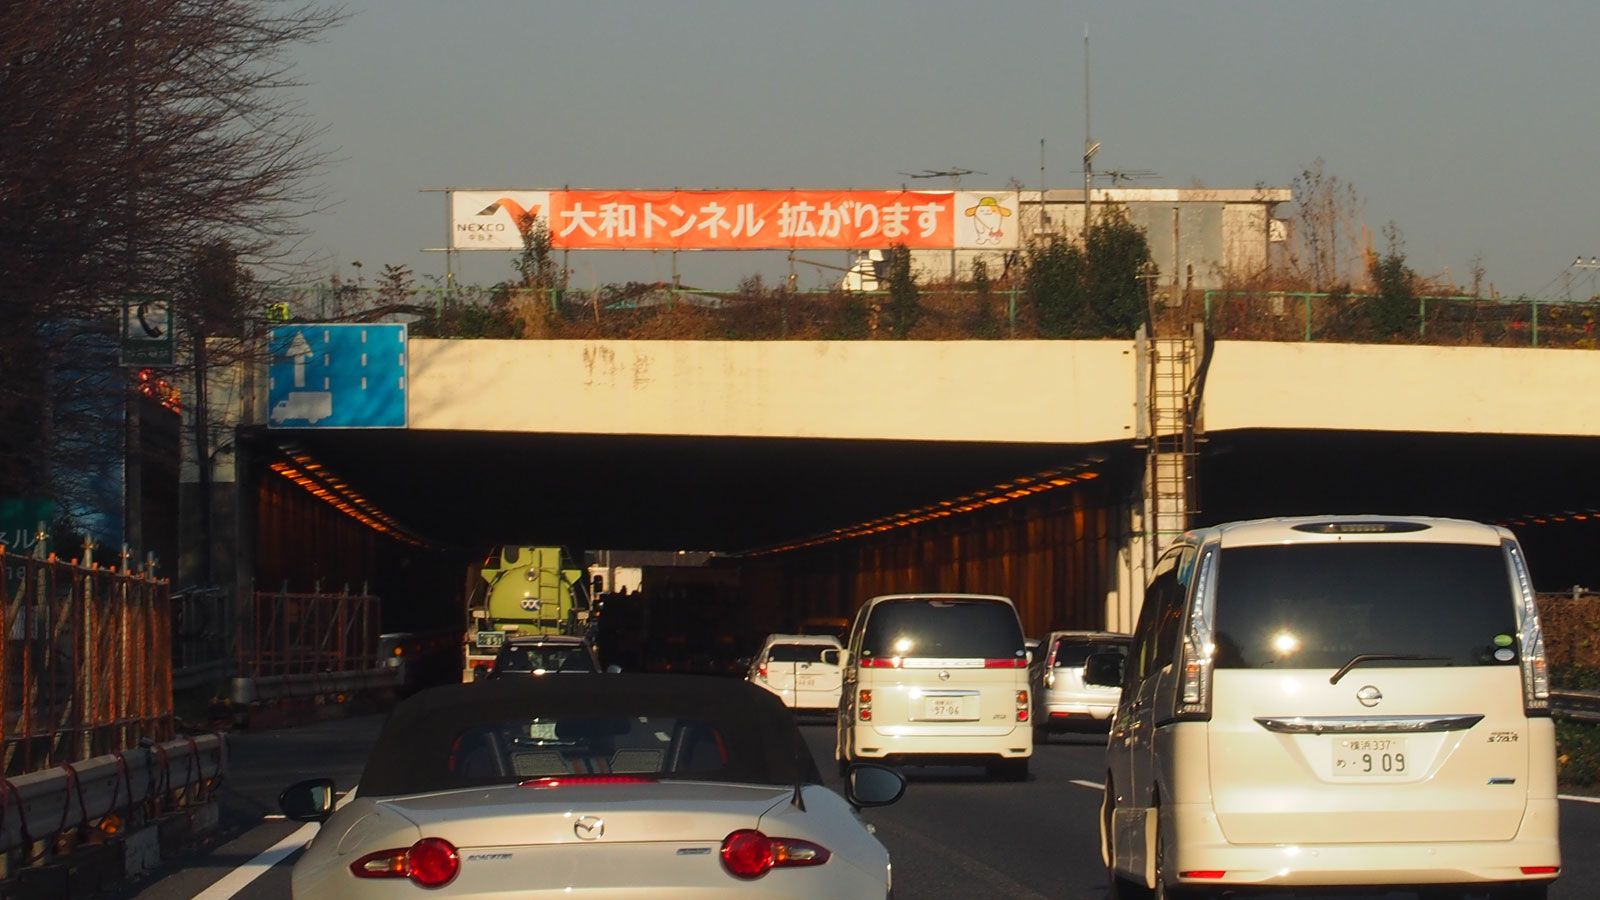 東名｢大和トンネル｣がいつも渋滞する理由 自然に誘発してしまうメカニズムがある | 佐滝剛弘の高速道路最前線 | 東洋経済オンライン